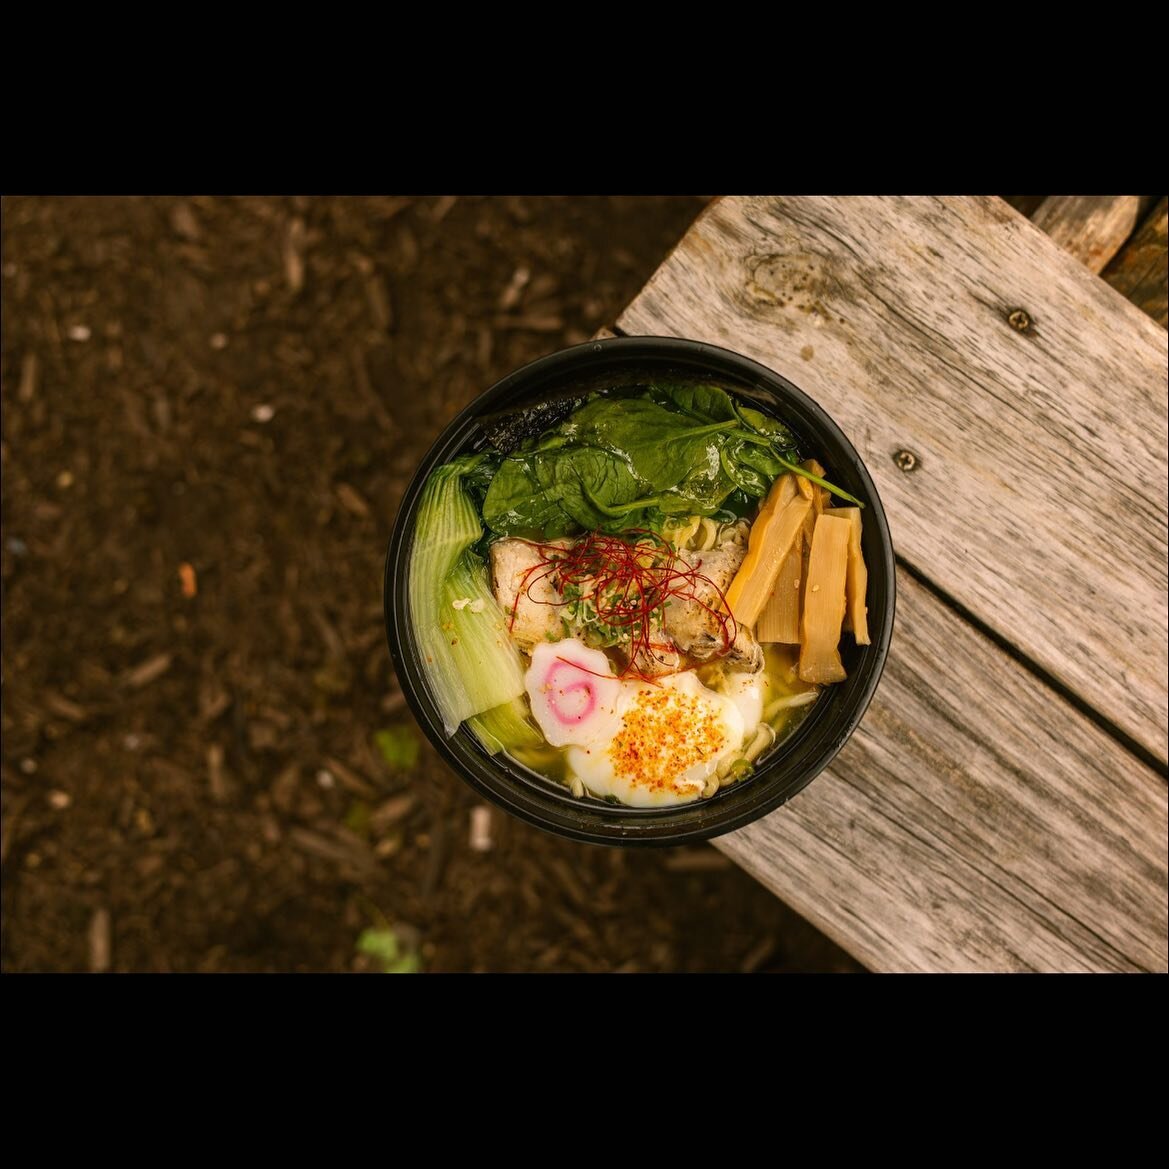 Chicken shio ramen 🍜 
Open at 11am everyday ❤️